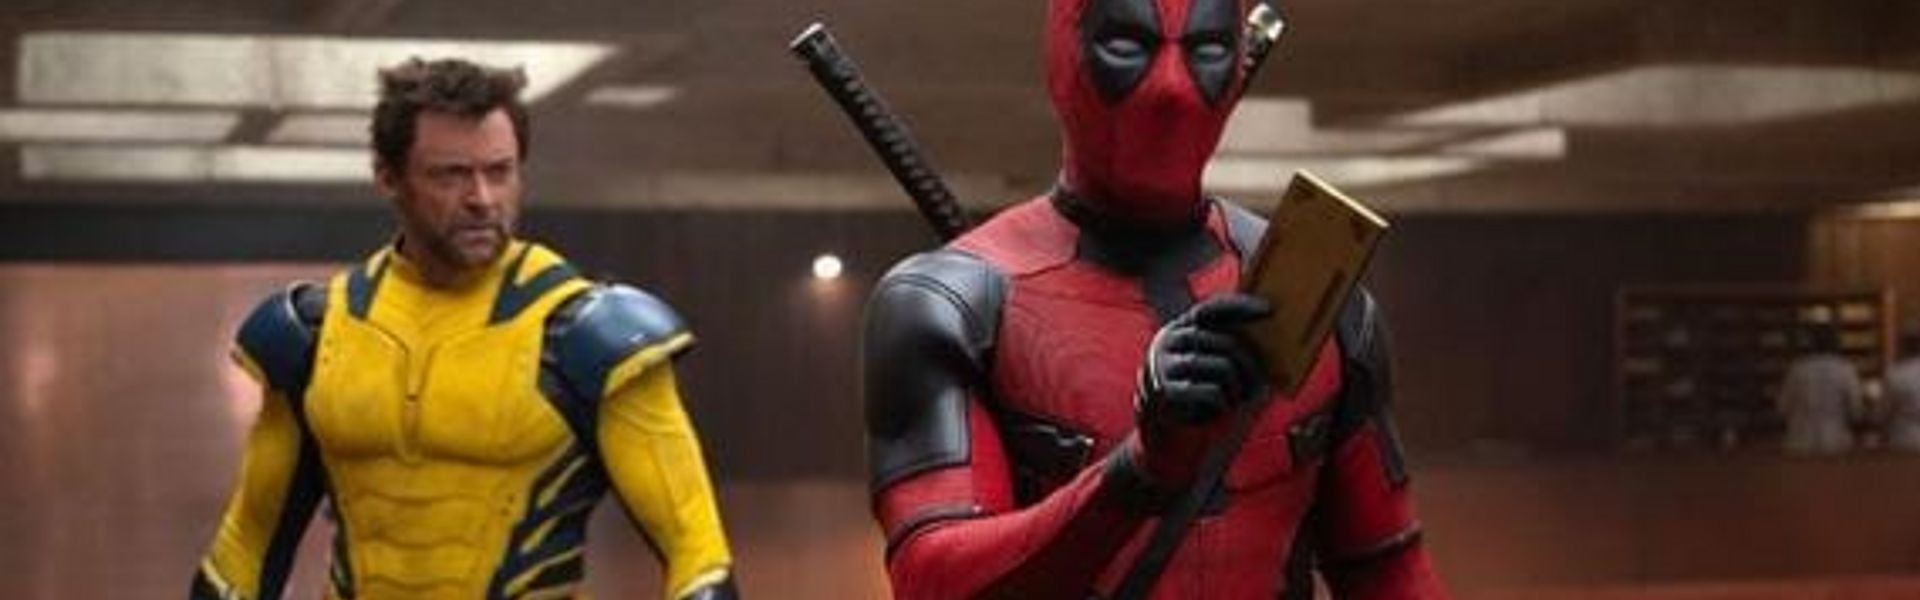 Deadpool & Wolverine é a grande estreia da semana nos cinemas